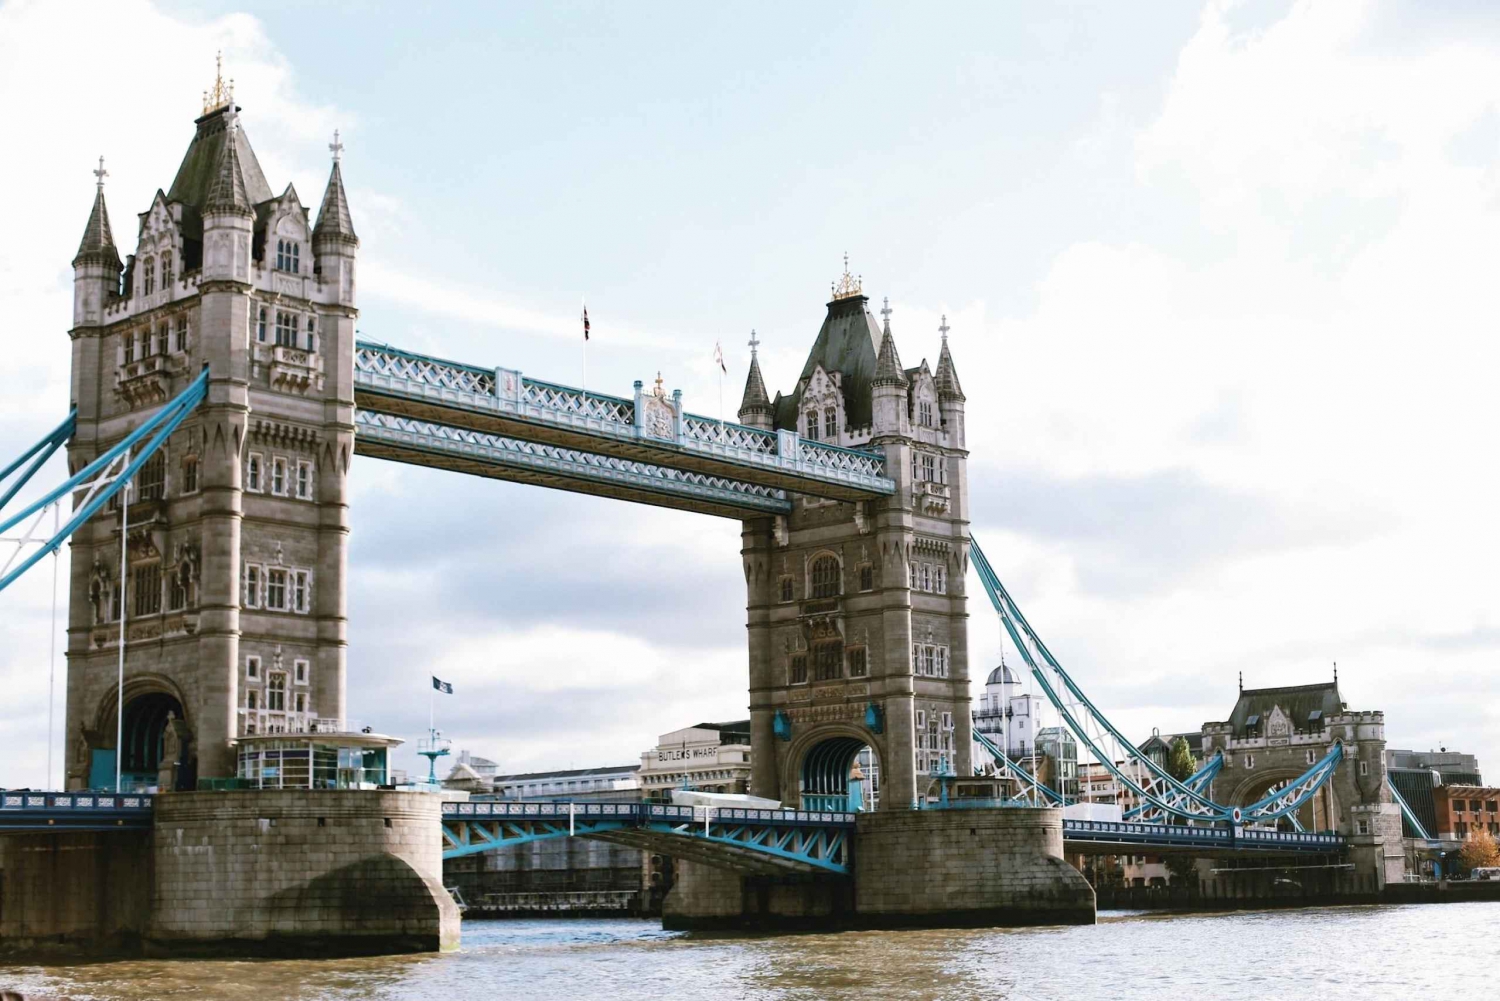 Londyn: Stare Miasto w Londynie — piesza wycieczka z przewodnikiem